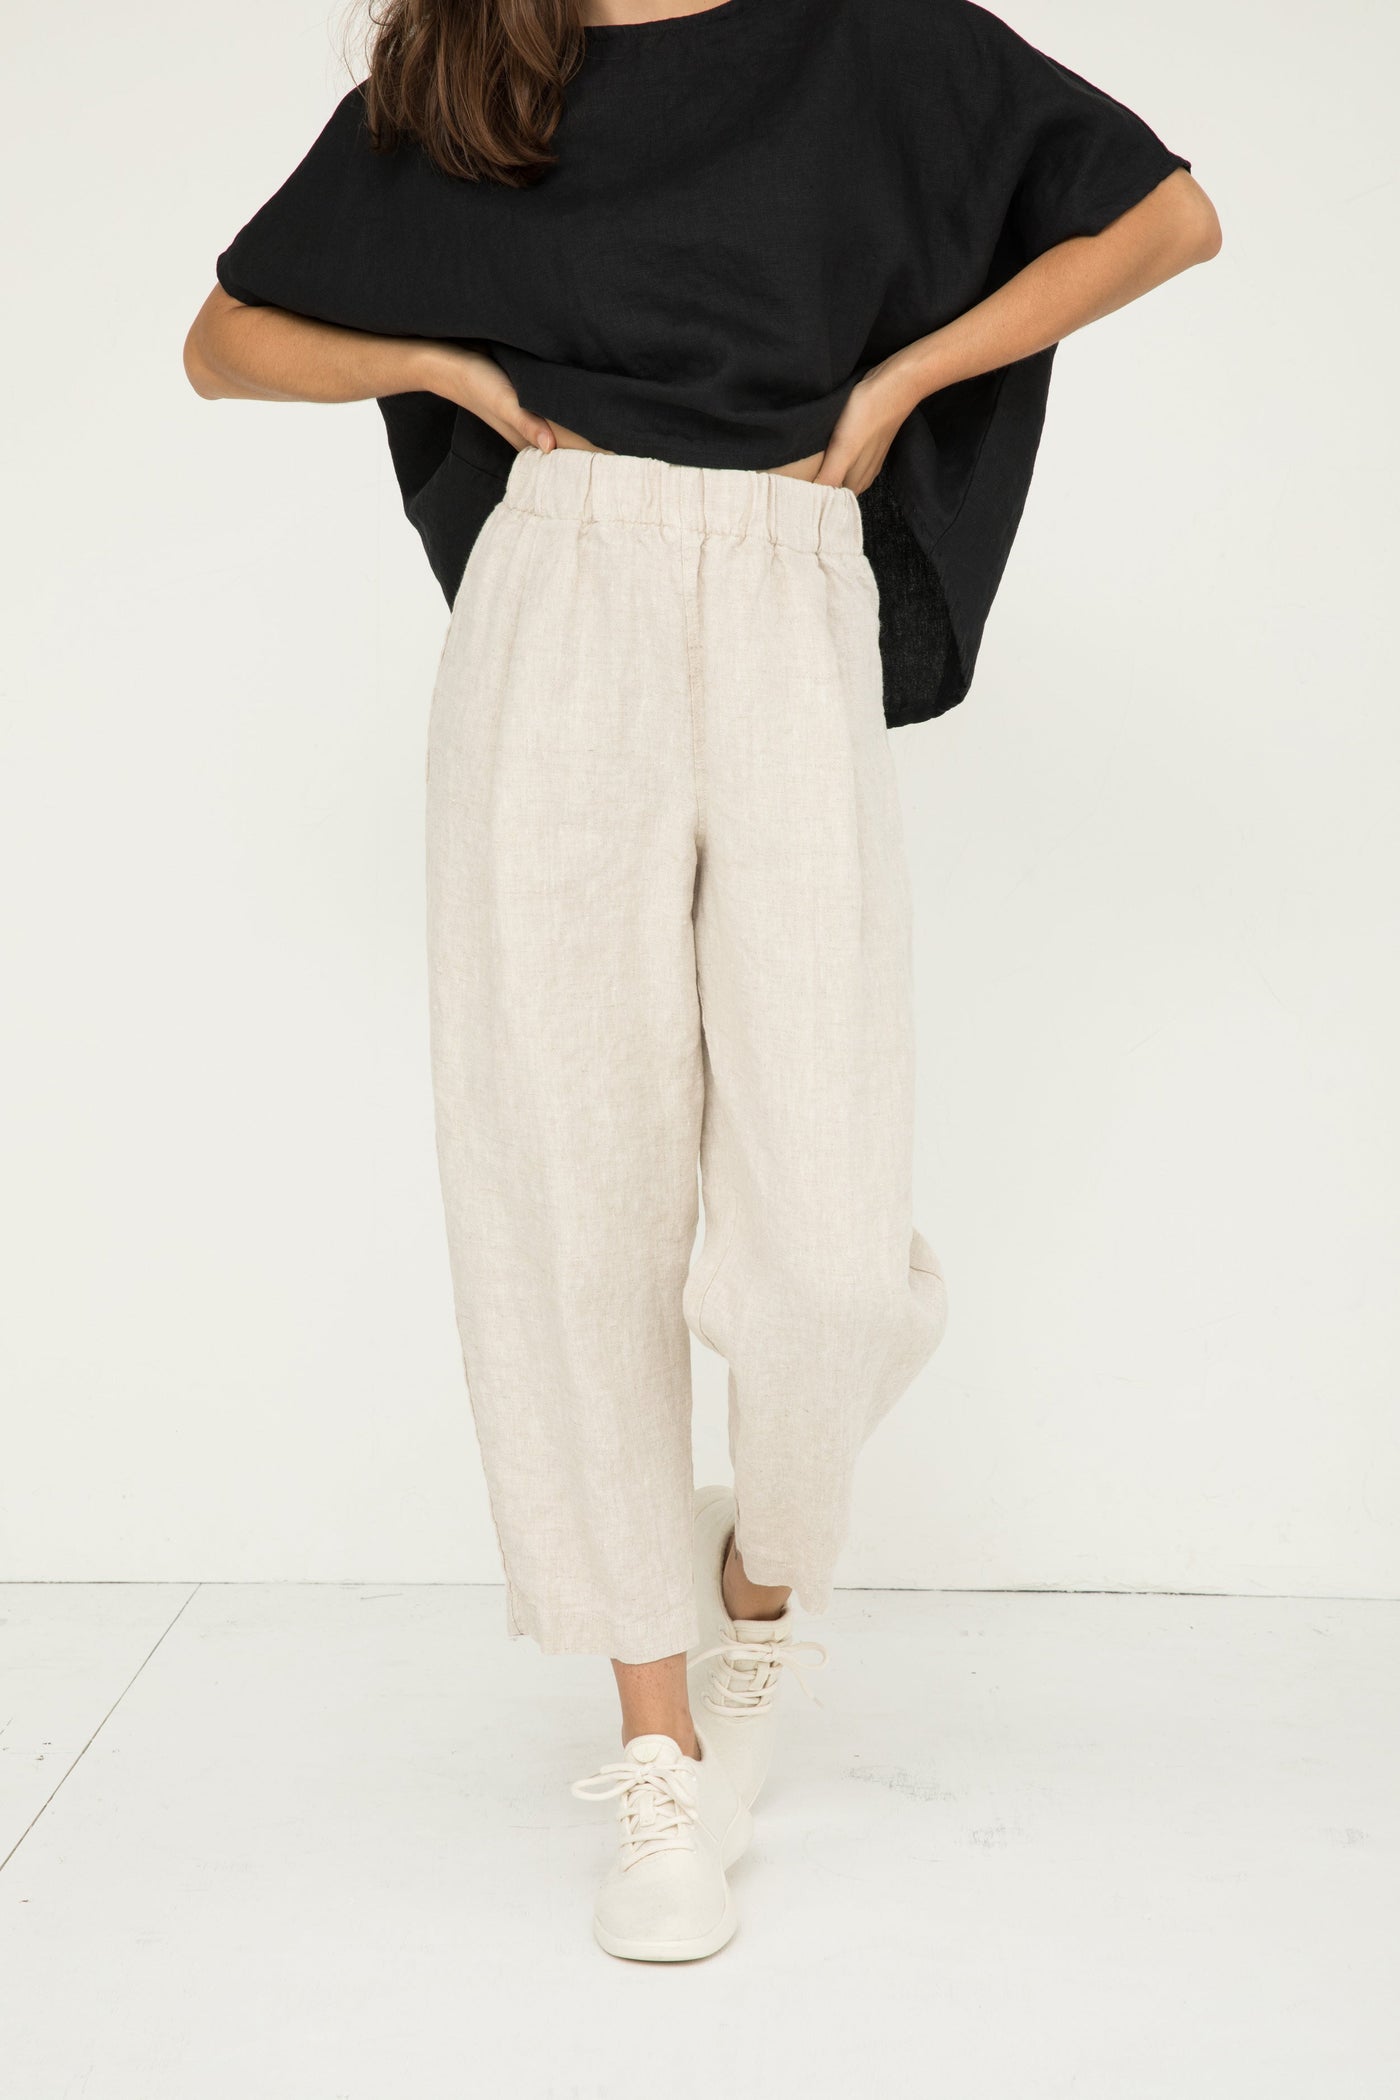 Shop Cotton & Linen Pants for Women Online | SeamsFriendly